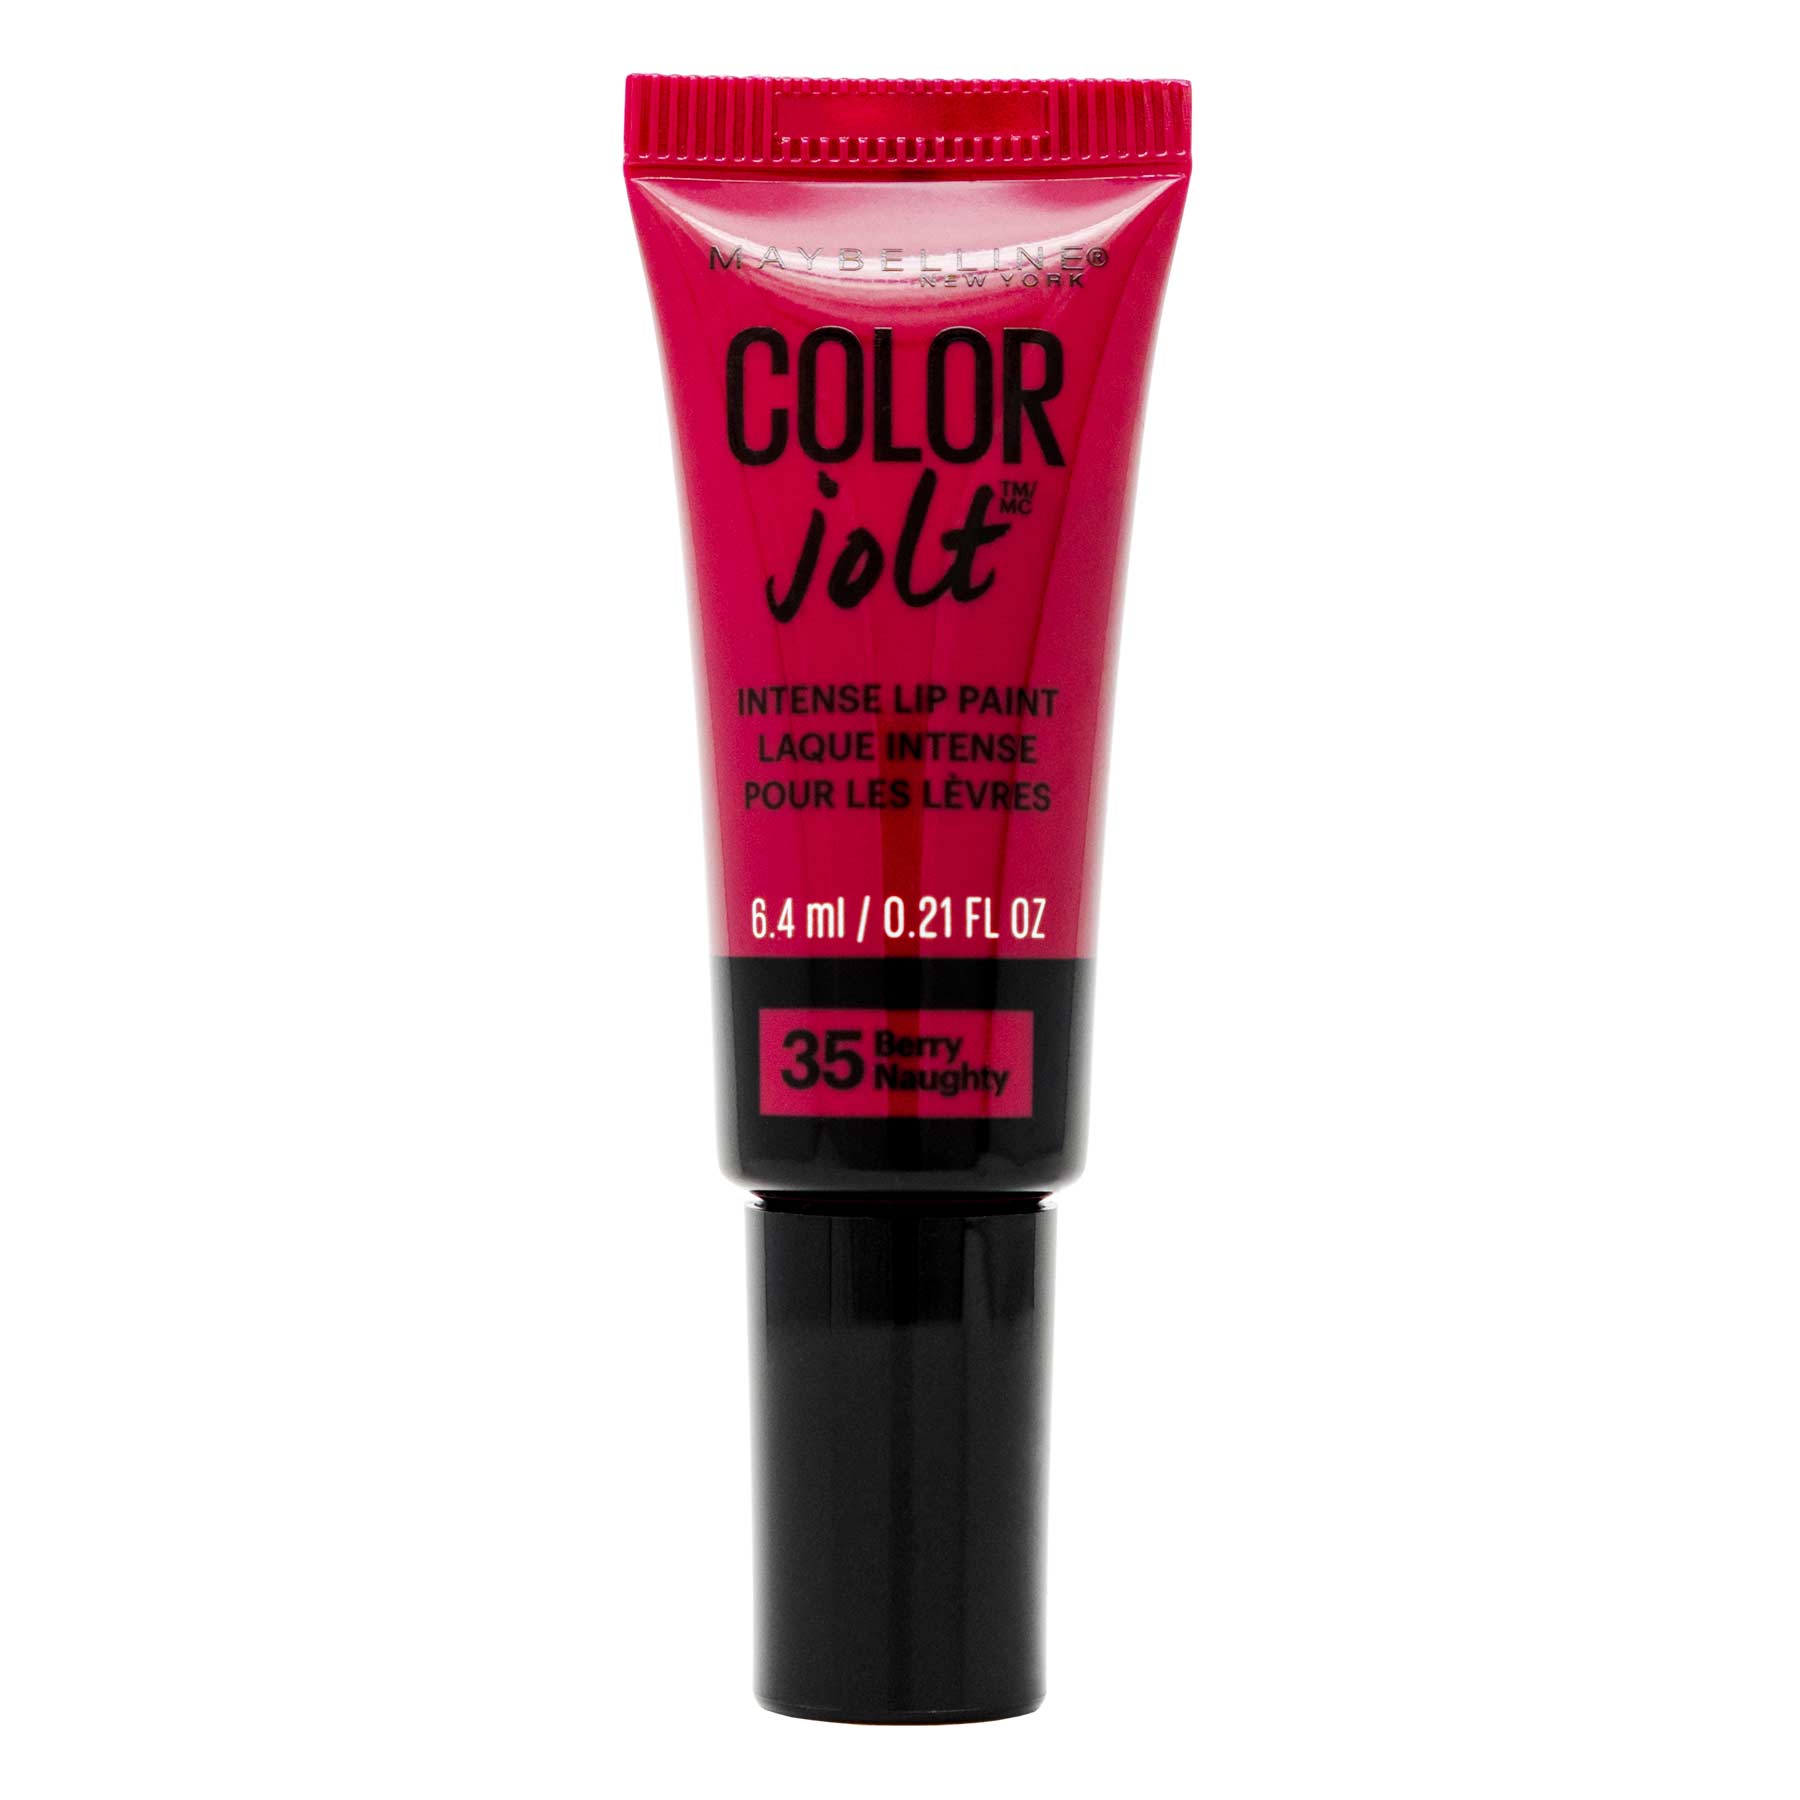 Maybelline Lip Studio Color Jolt Intense Lip Paint